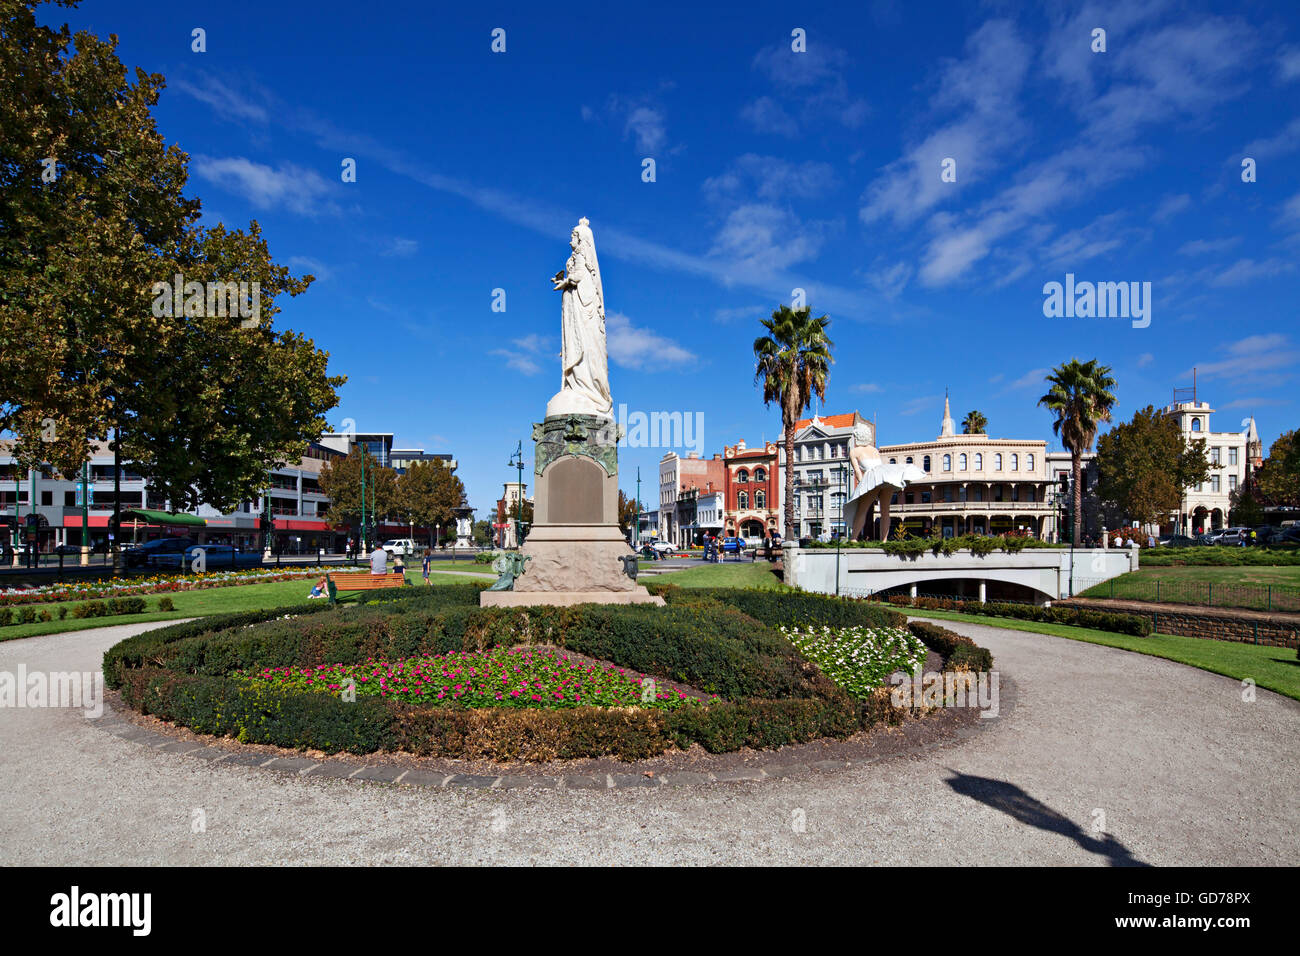 Monument de la reine Victoria dans la ville de Ballarat Victoria en Australie. Banque D'Images